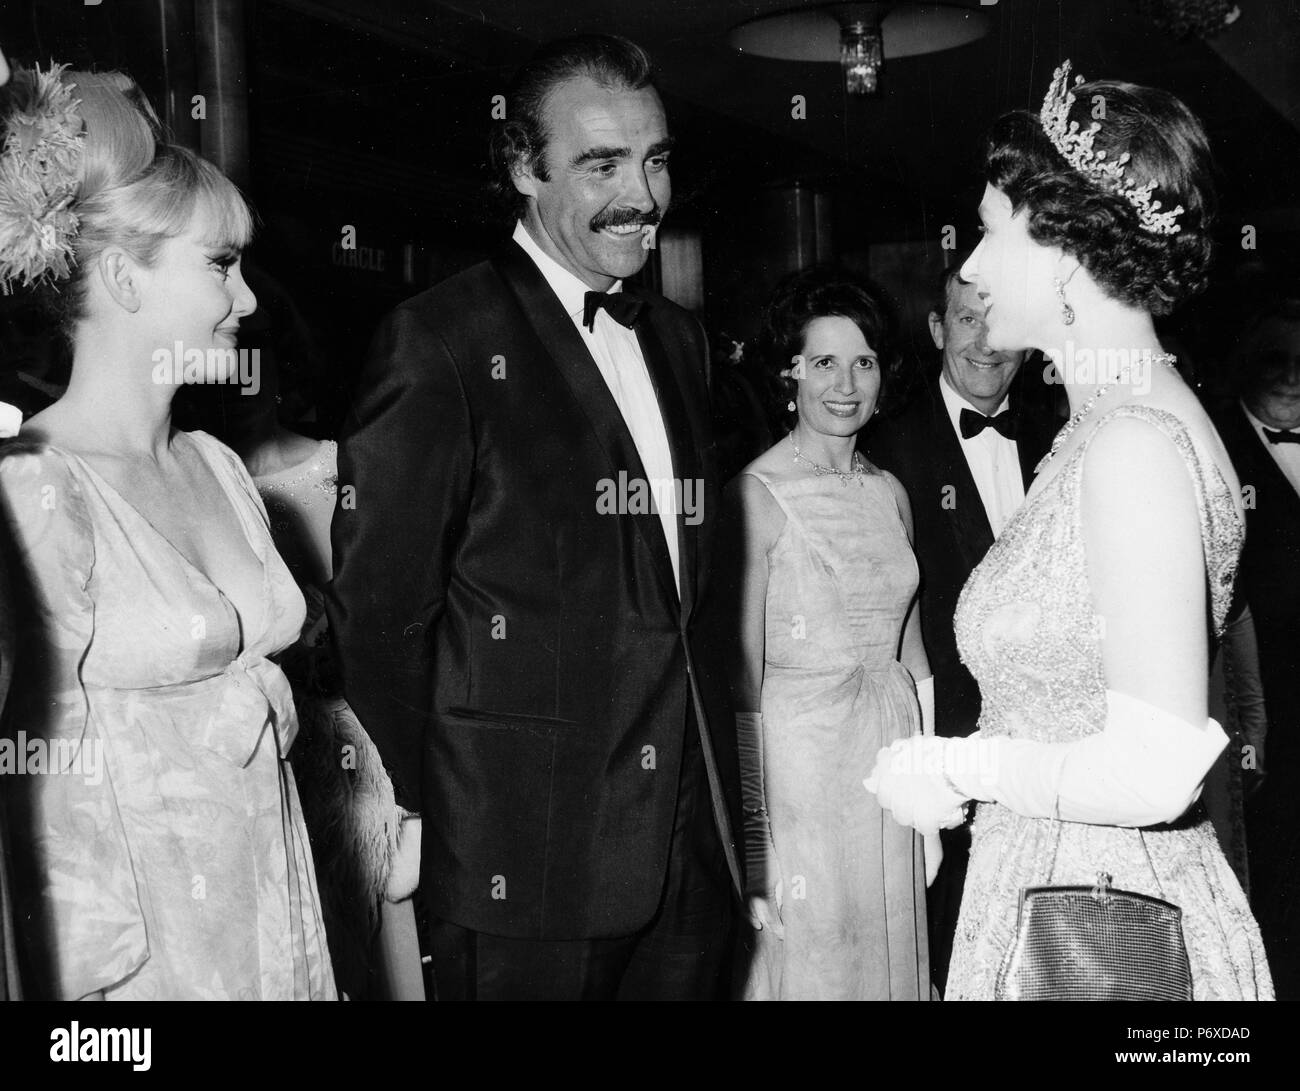 La reine Elizabeth II, Diane cilento, Sean Connery, Lewis Gilbert, hylda tafler, théâtre de l'Odéon, Londres 1967 Banque D'Images